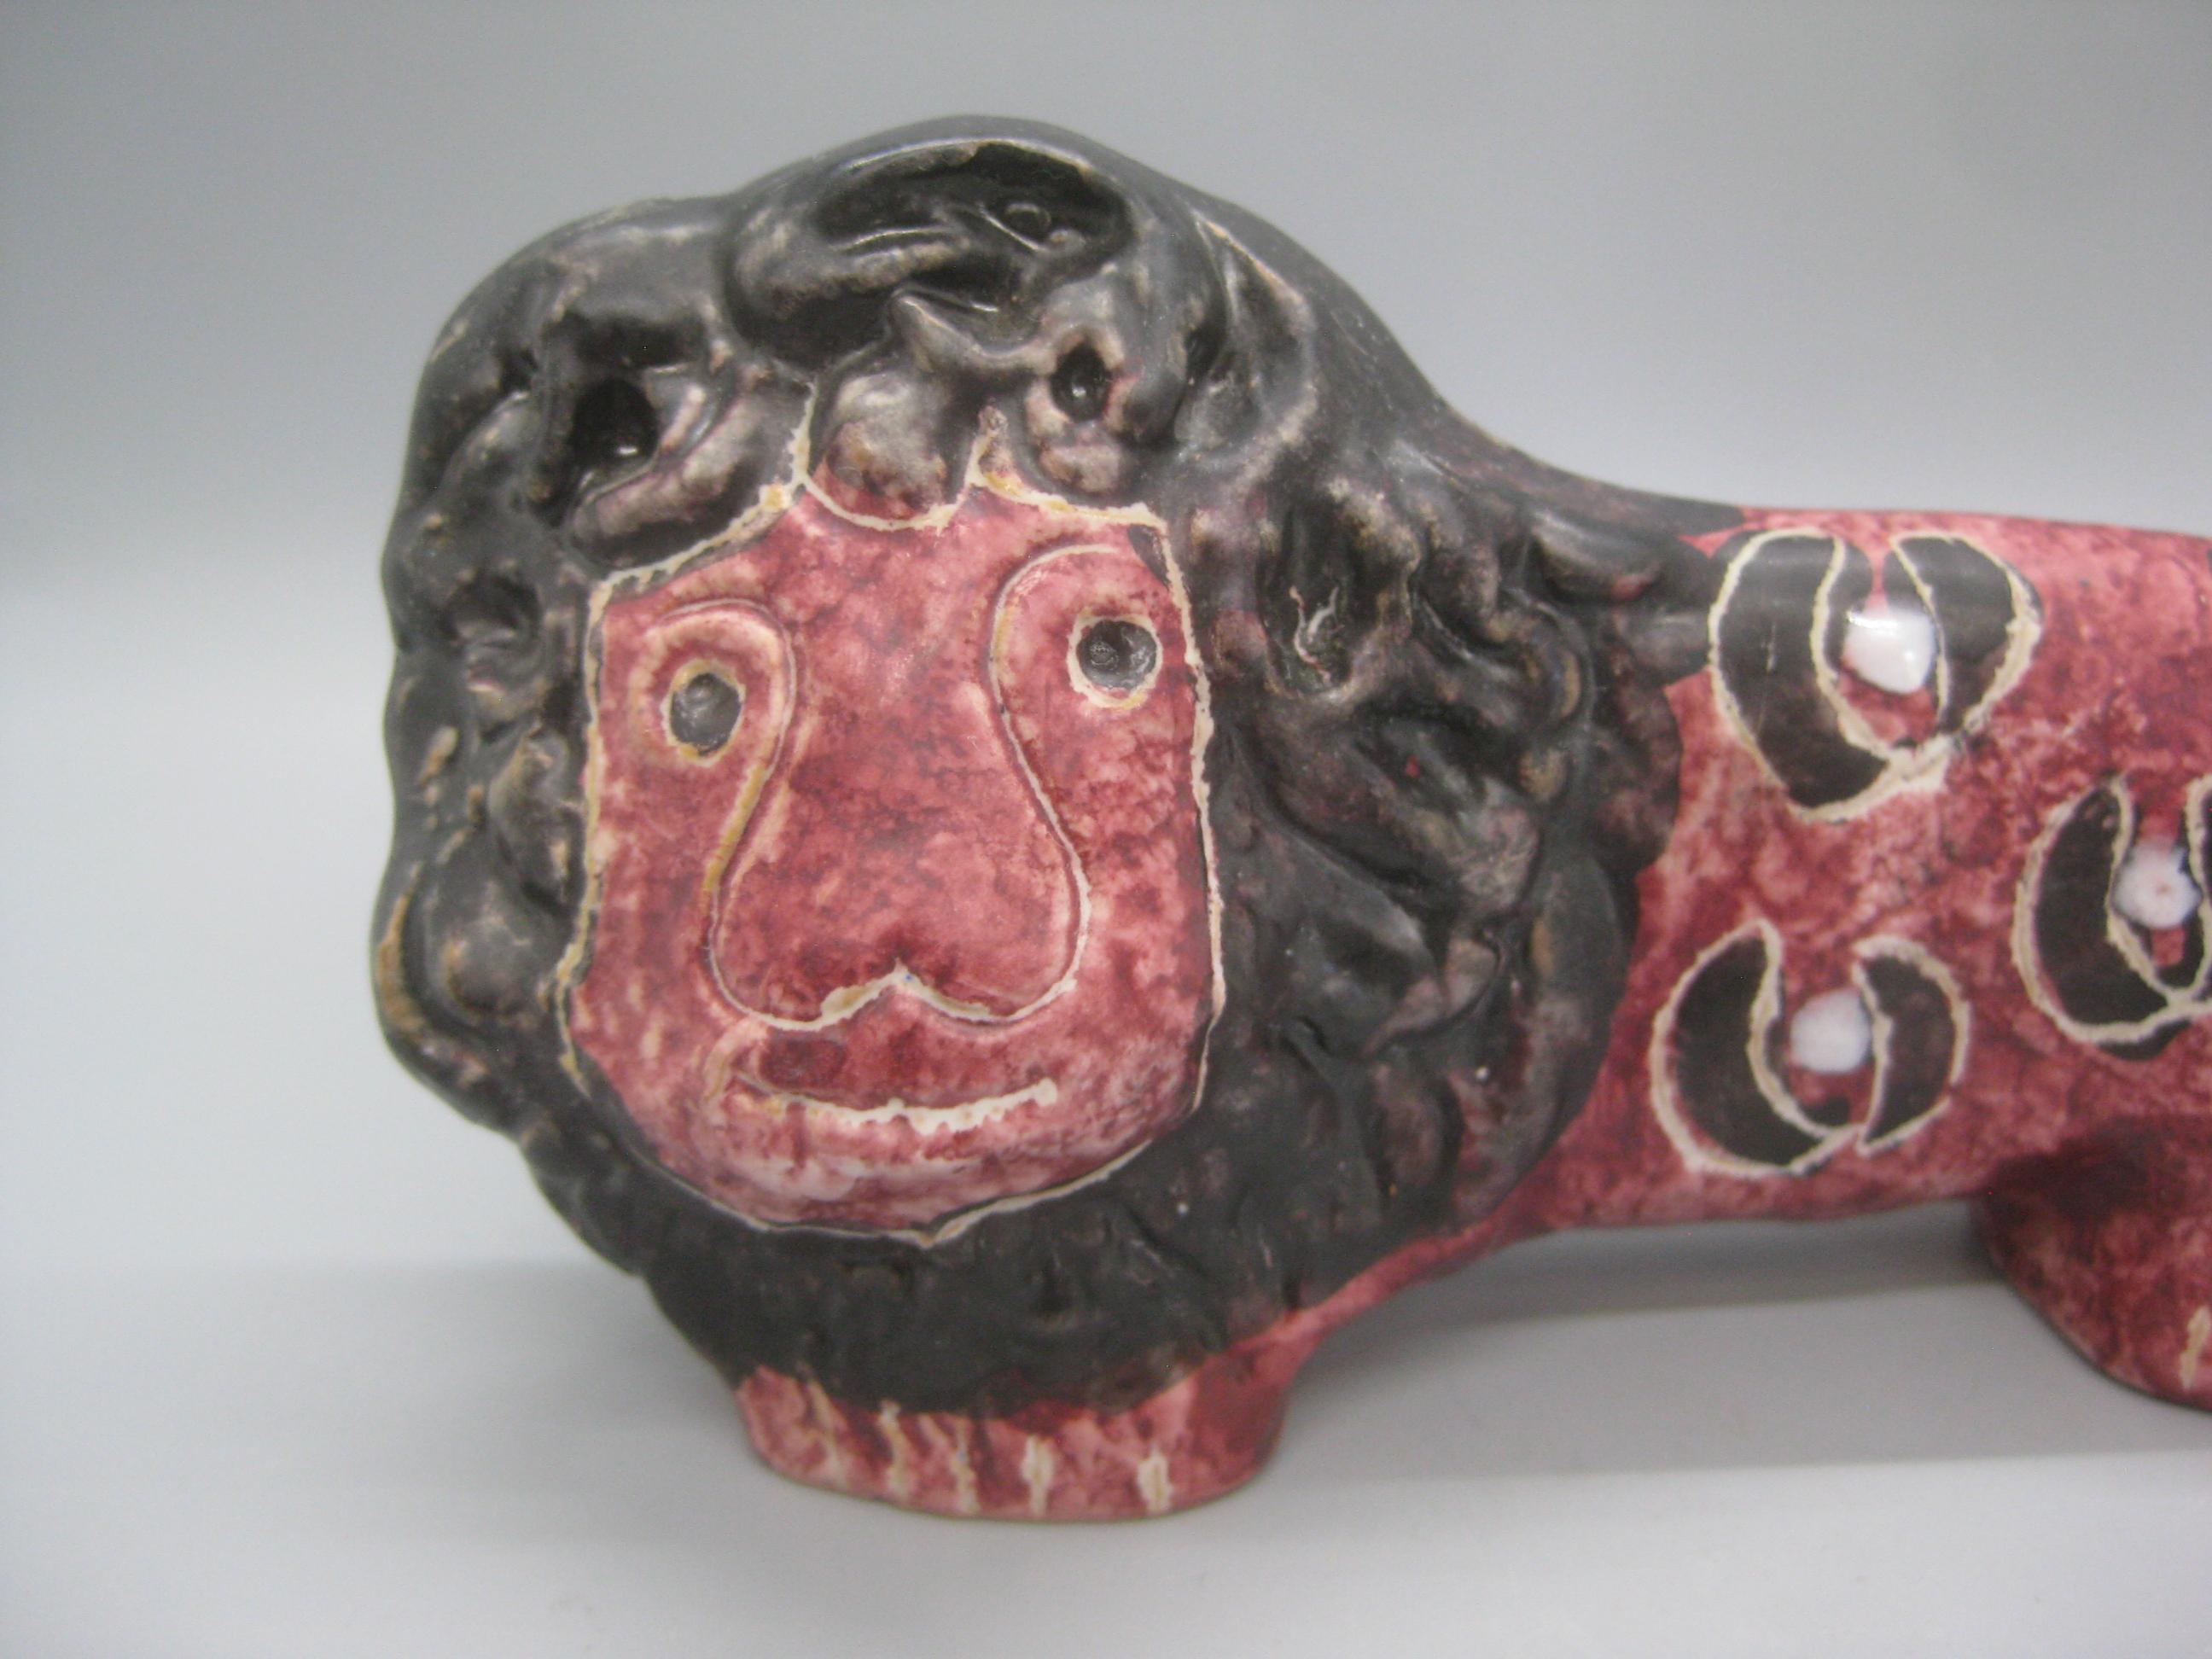 Magnifique sculpture figurine de lion en poterie d'art italienne Aldo Bitossi, datant des années 1960. Marqué sur le fond 